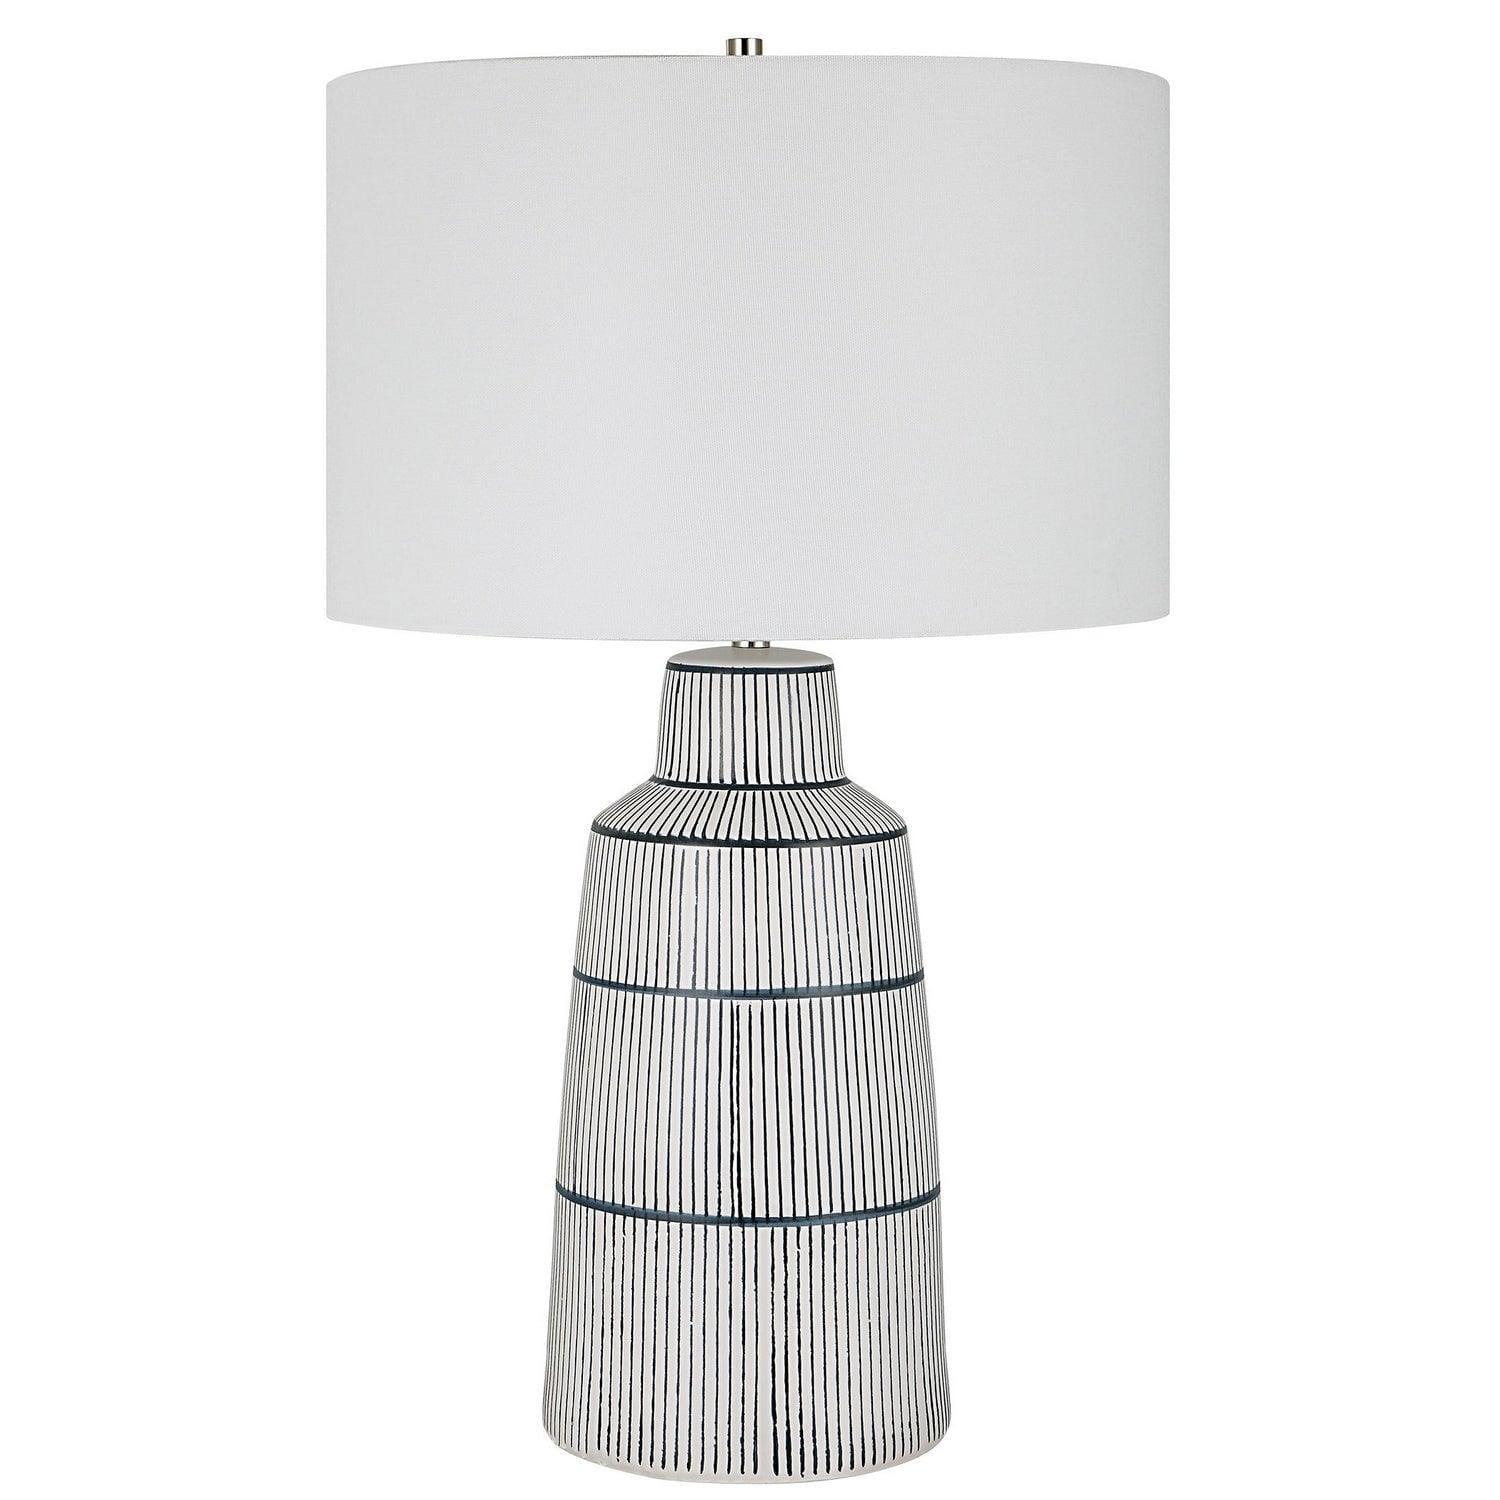 The Uttermost - Breton Table Lamp - 30059-1 | Montreal Lighting & Hardware